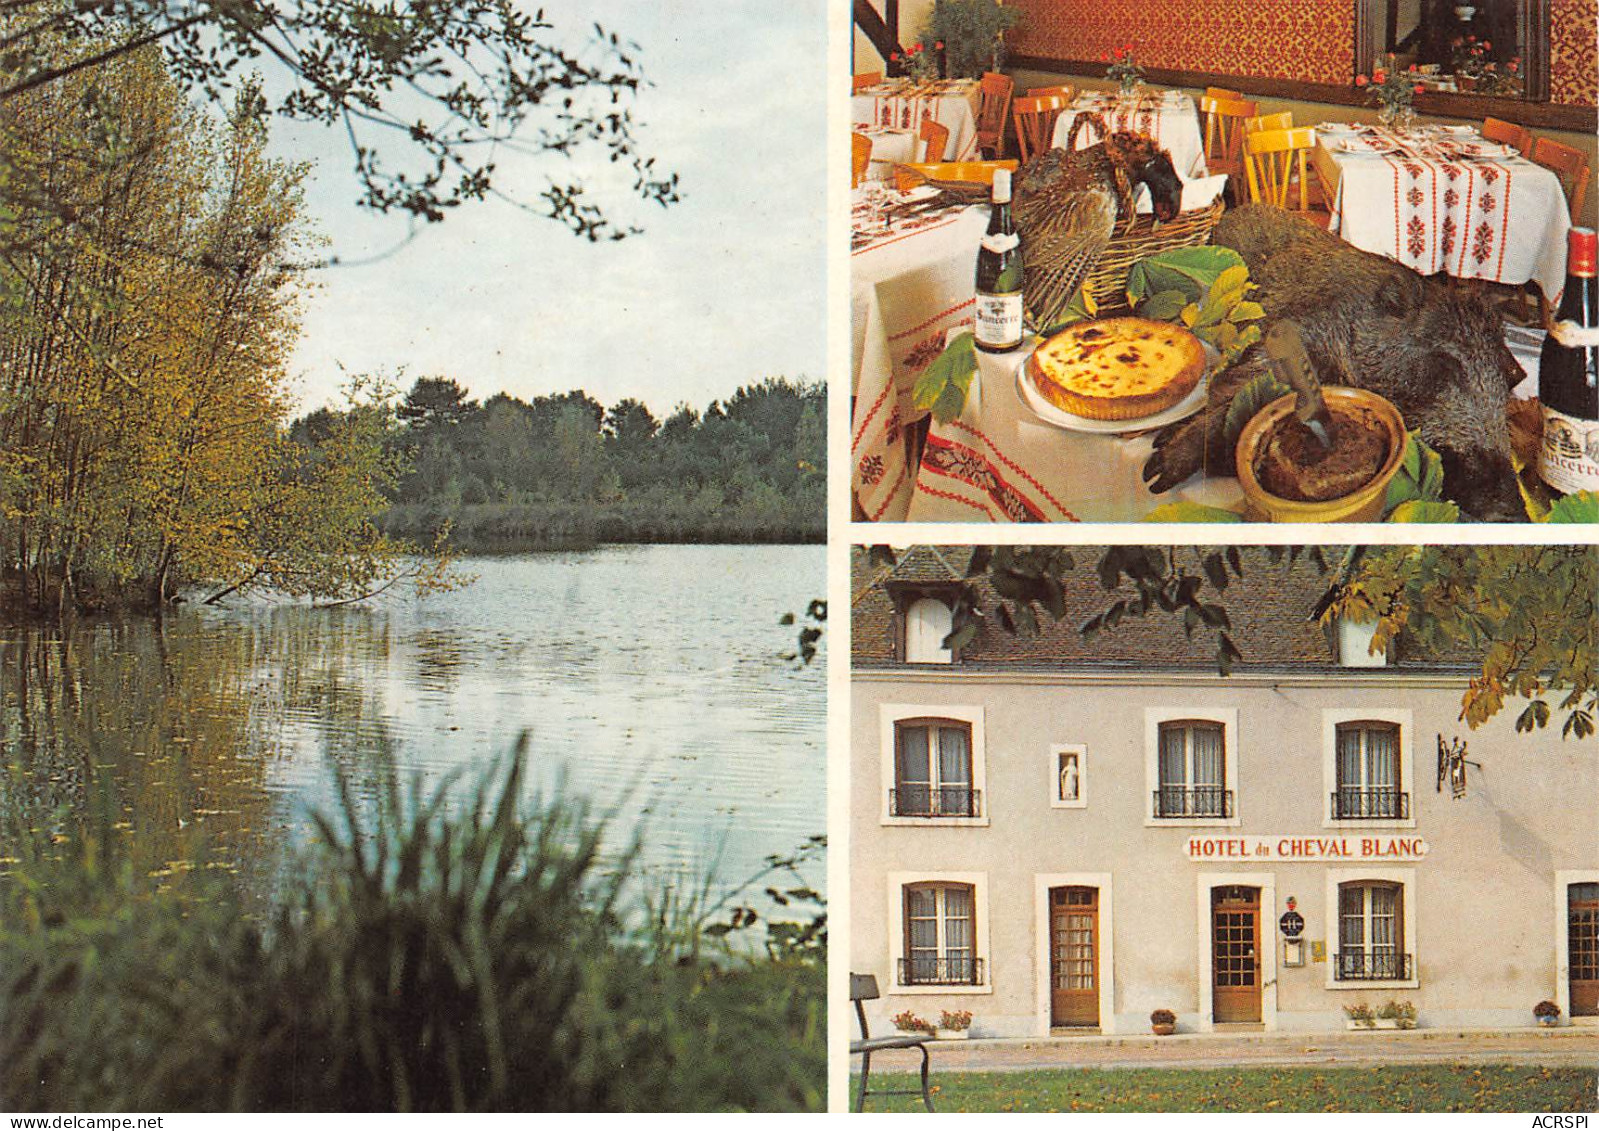 AUBIGNY Sur NEVE Hotel Restaurant LE CHEVAL BLANC Sainte Montaine  11   (scan Recto-verso)MA2299 - Aubigny Sur Nere